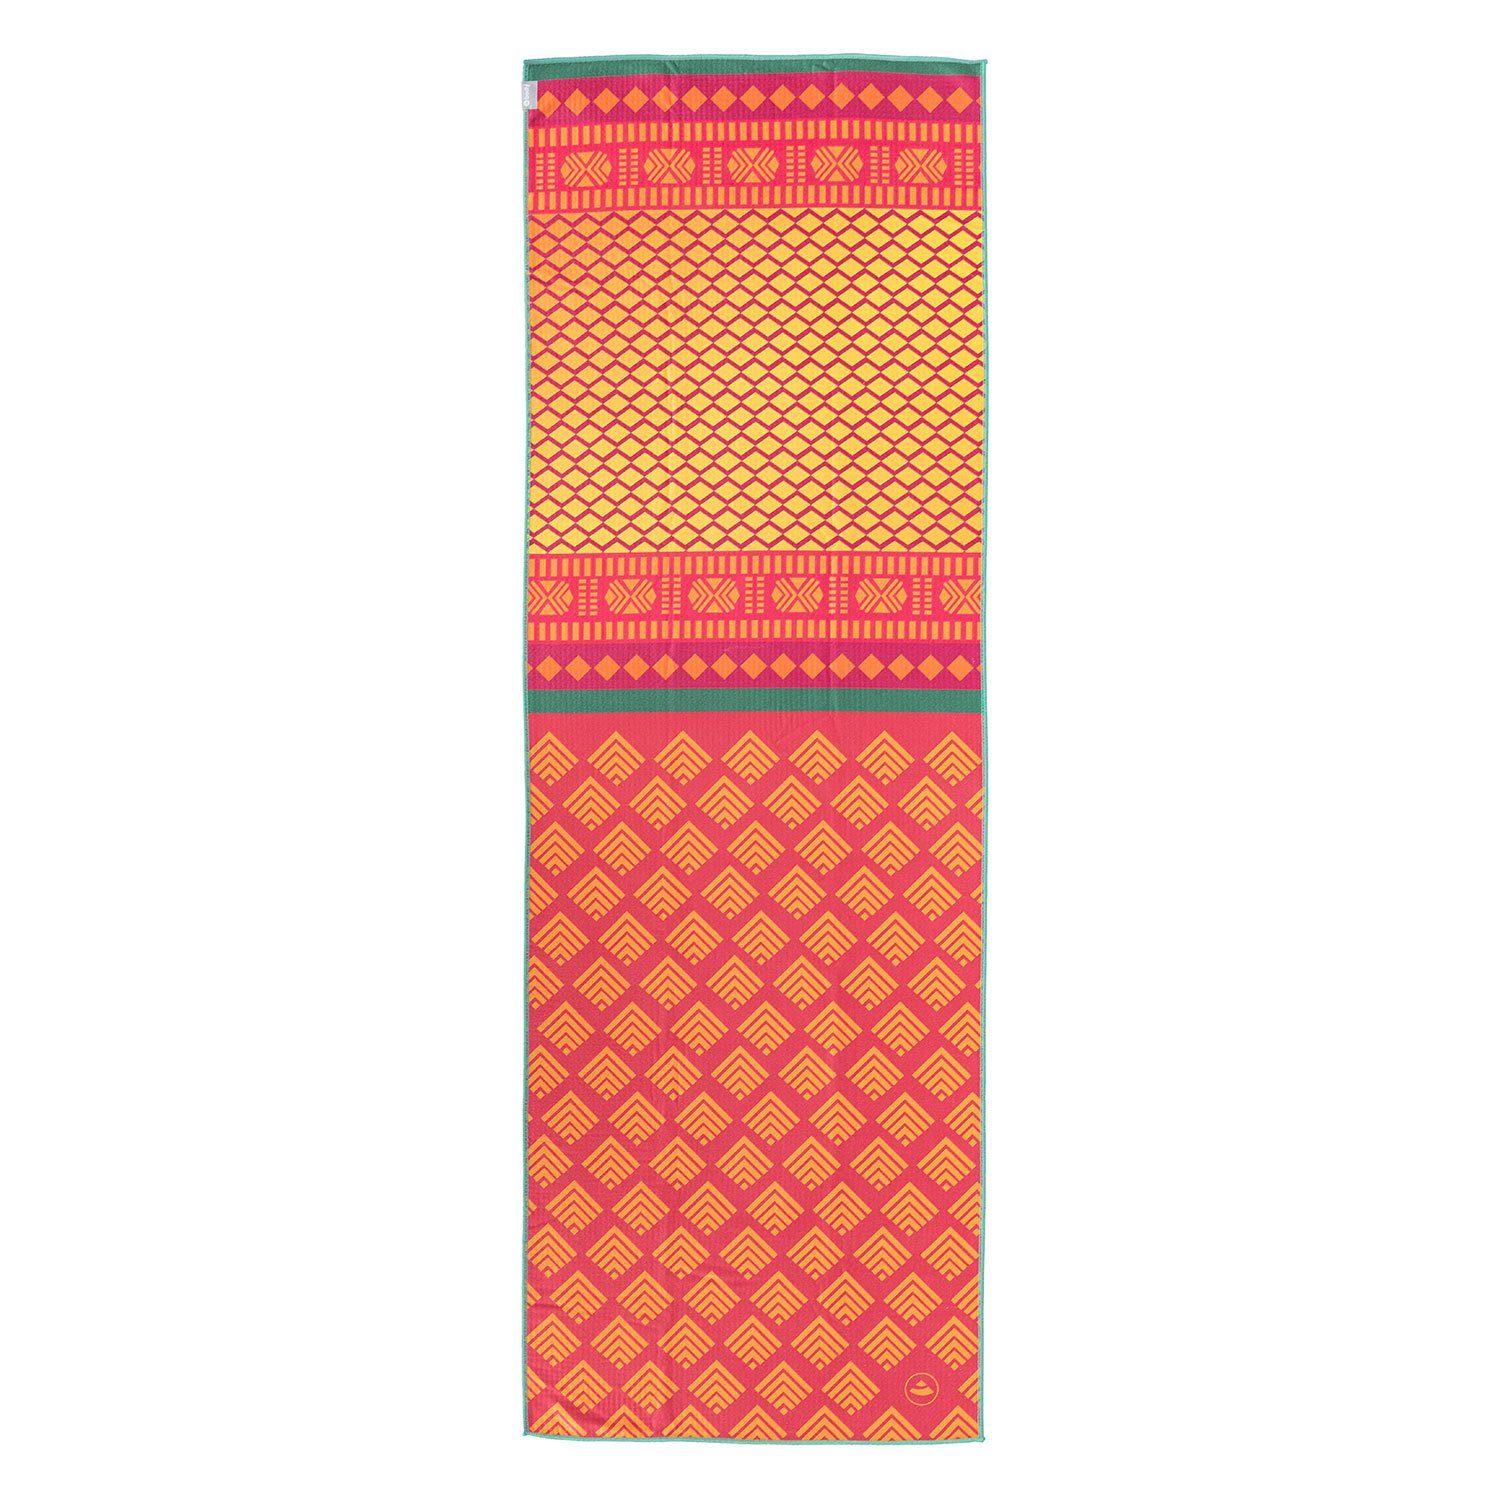 Sporthandtuch GRIP² bodhi Sari Safari Yoga Yogatuch Towel